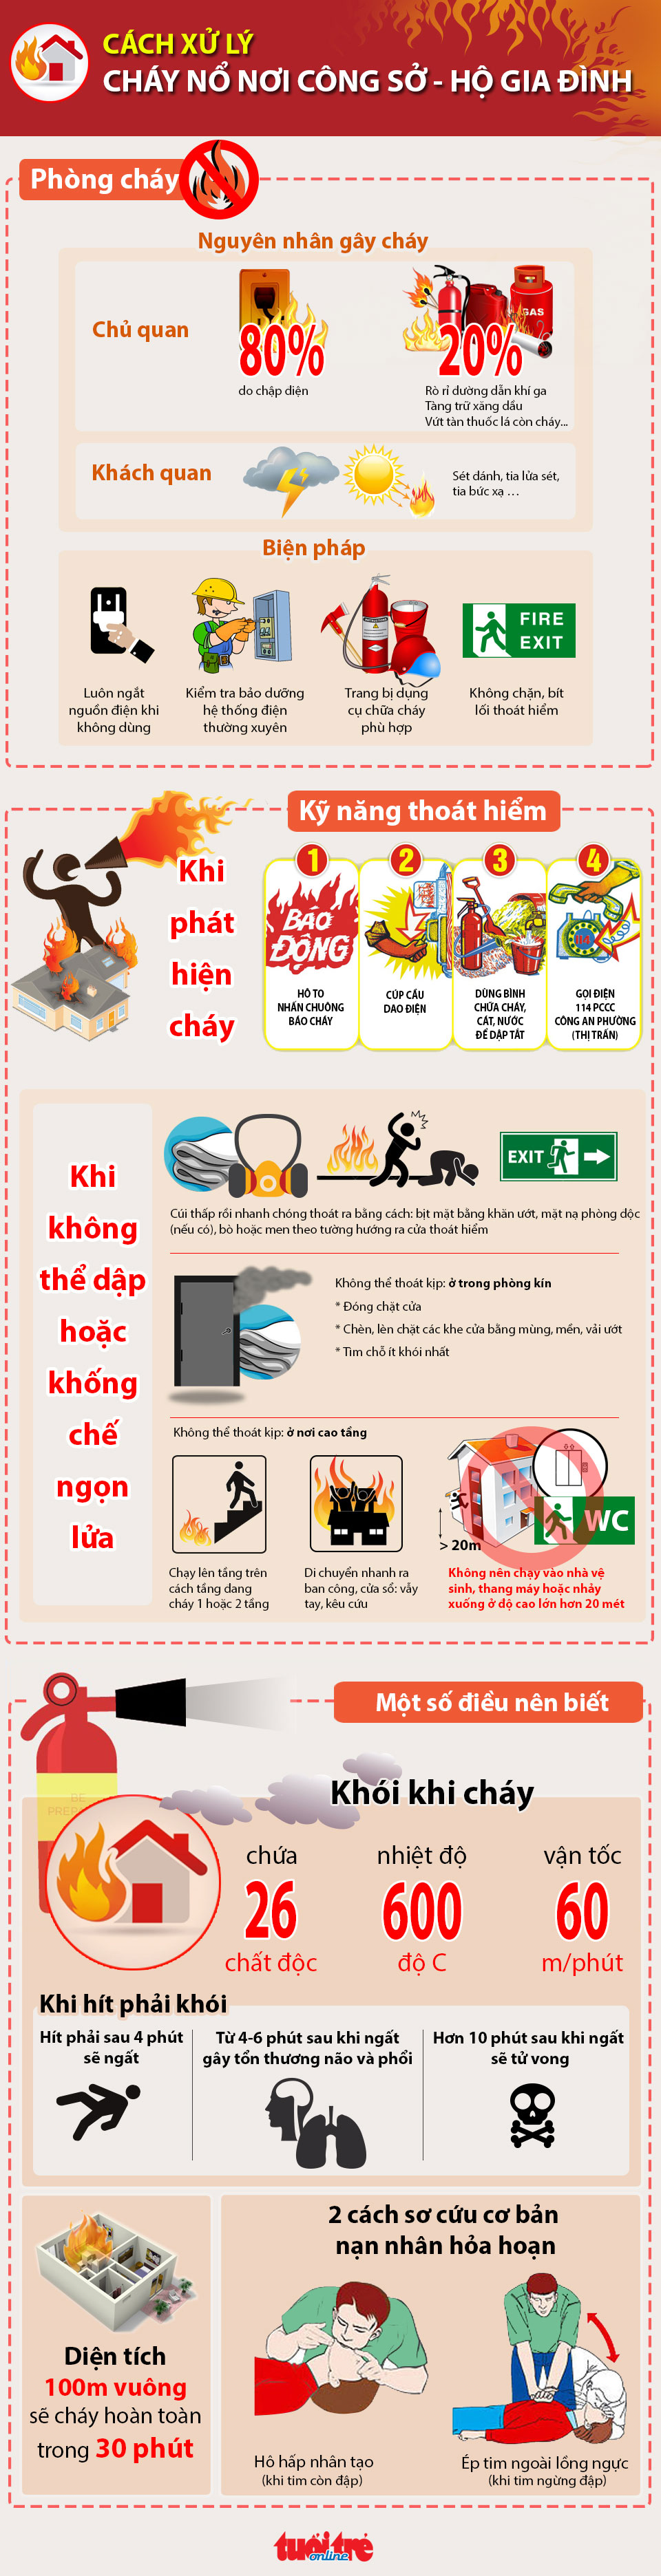 Kỹ năng phòng cháy, thoát hiểm nơi công sở và hộ gia đình - Đồ họa: Việt Thái-T.Thiên